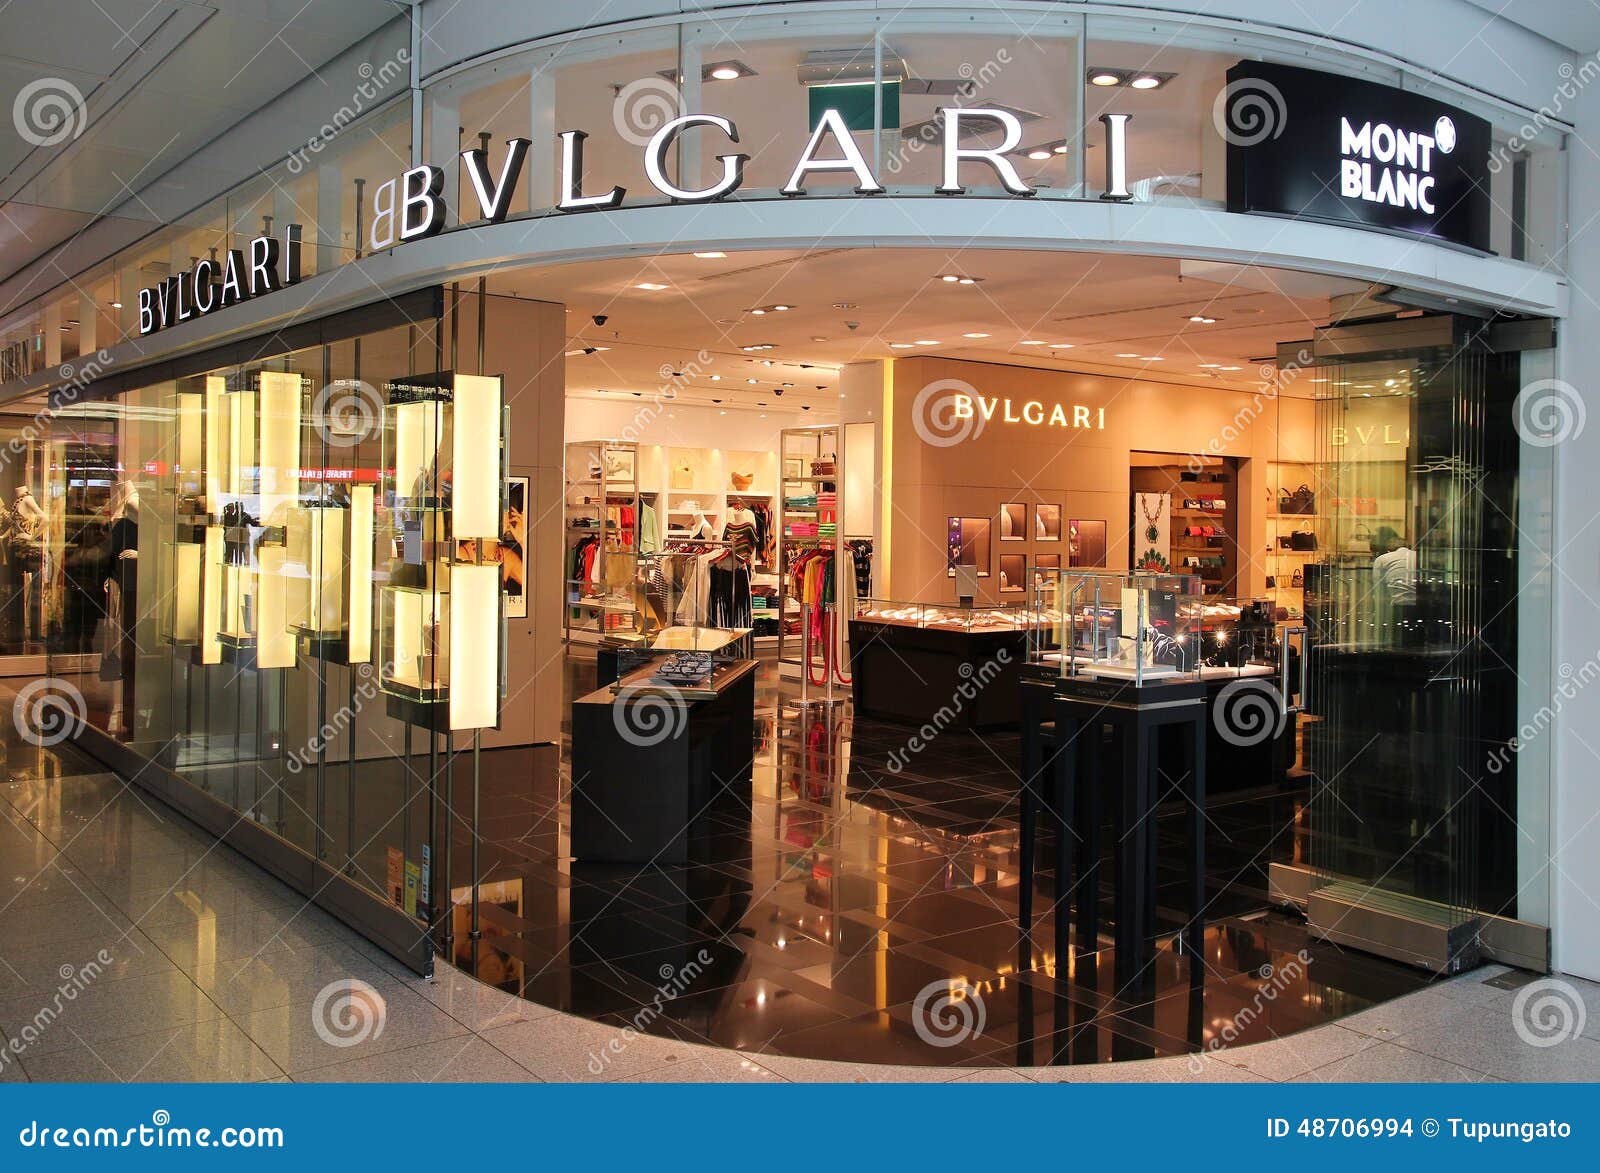 bulgari boutique dubai mall